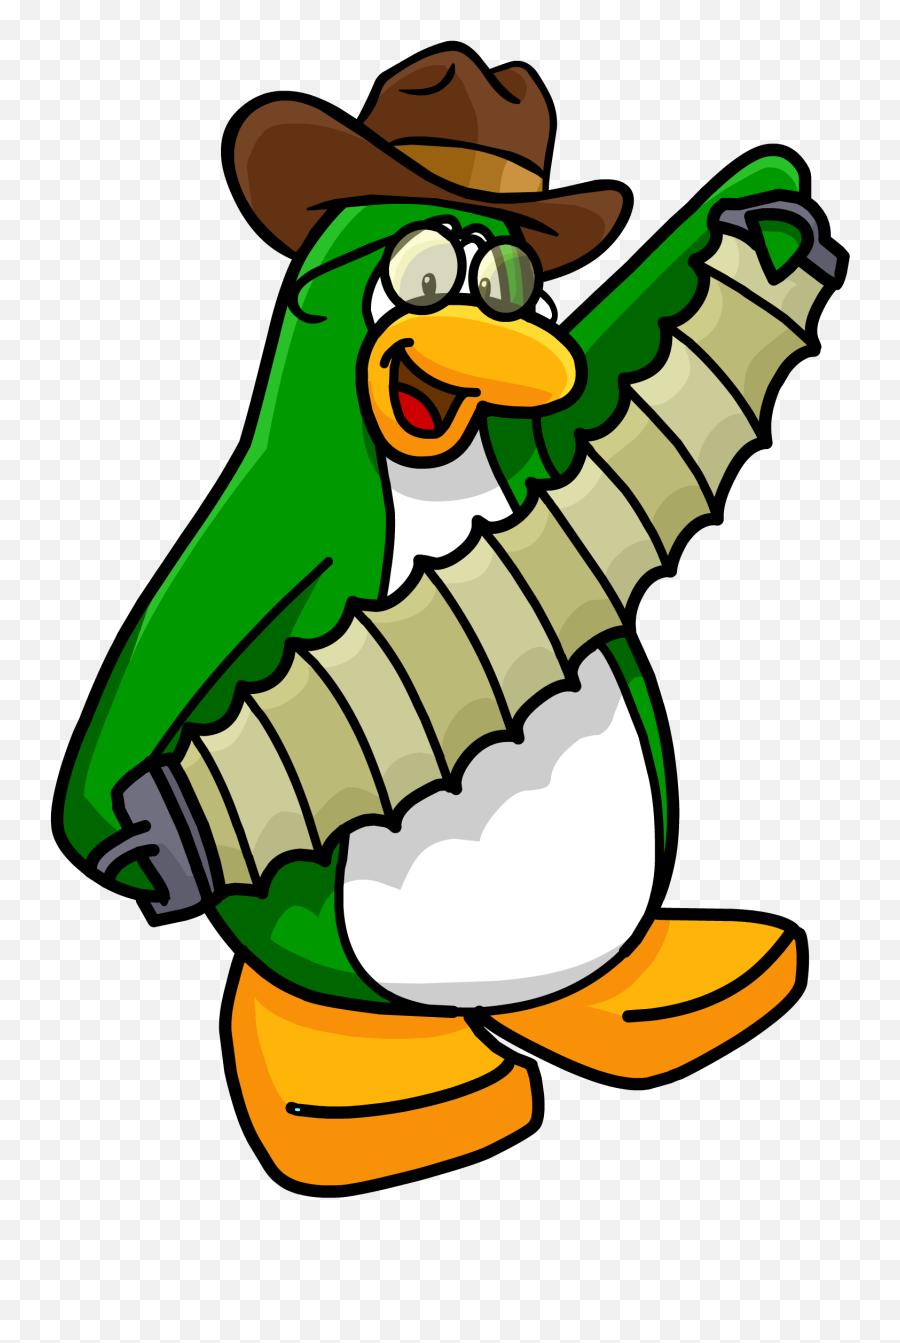 Drum Sticks Clipart Club Penguin - Club Penguin Petey Full Club Penguin Accordion Emoji,Drumsticks Clipart